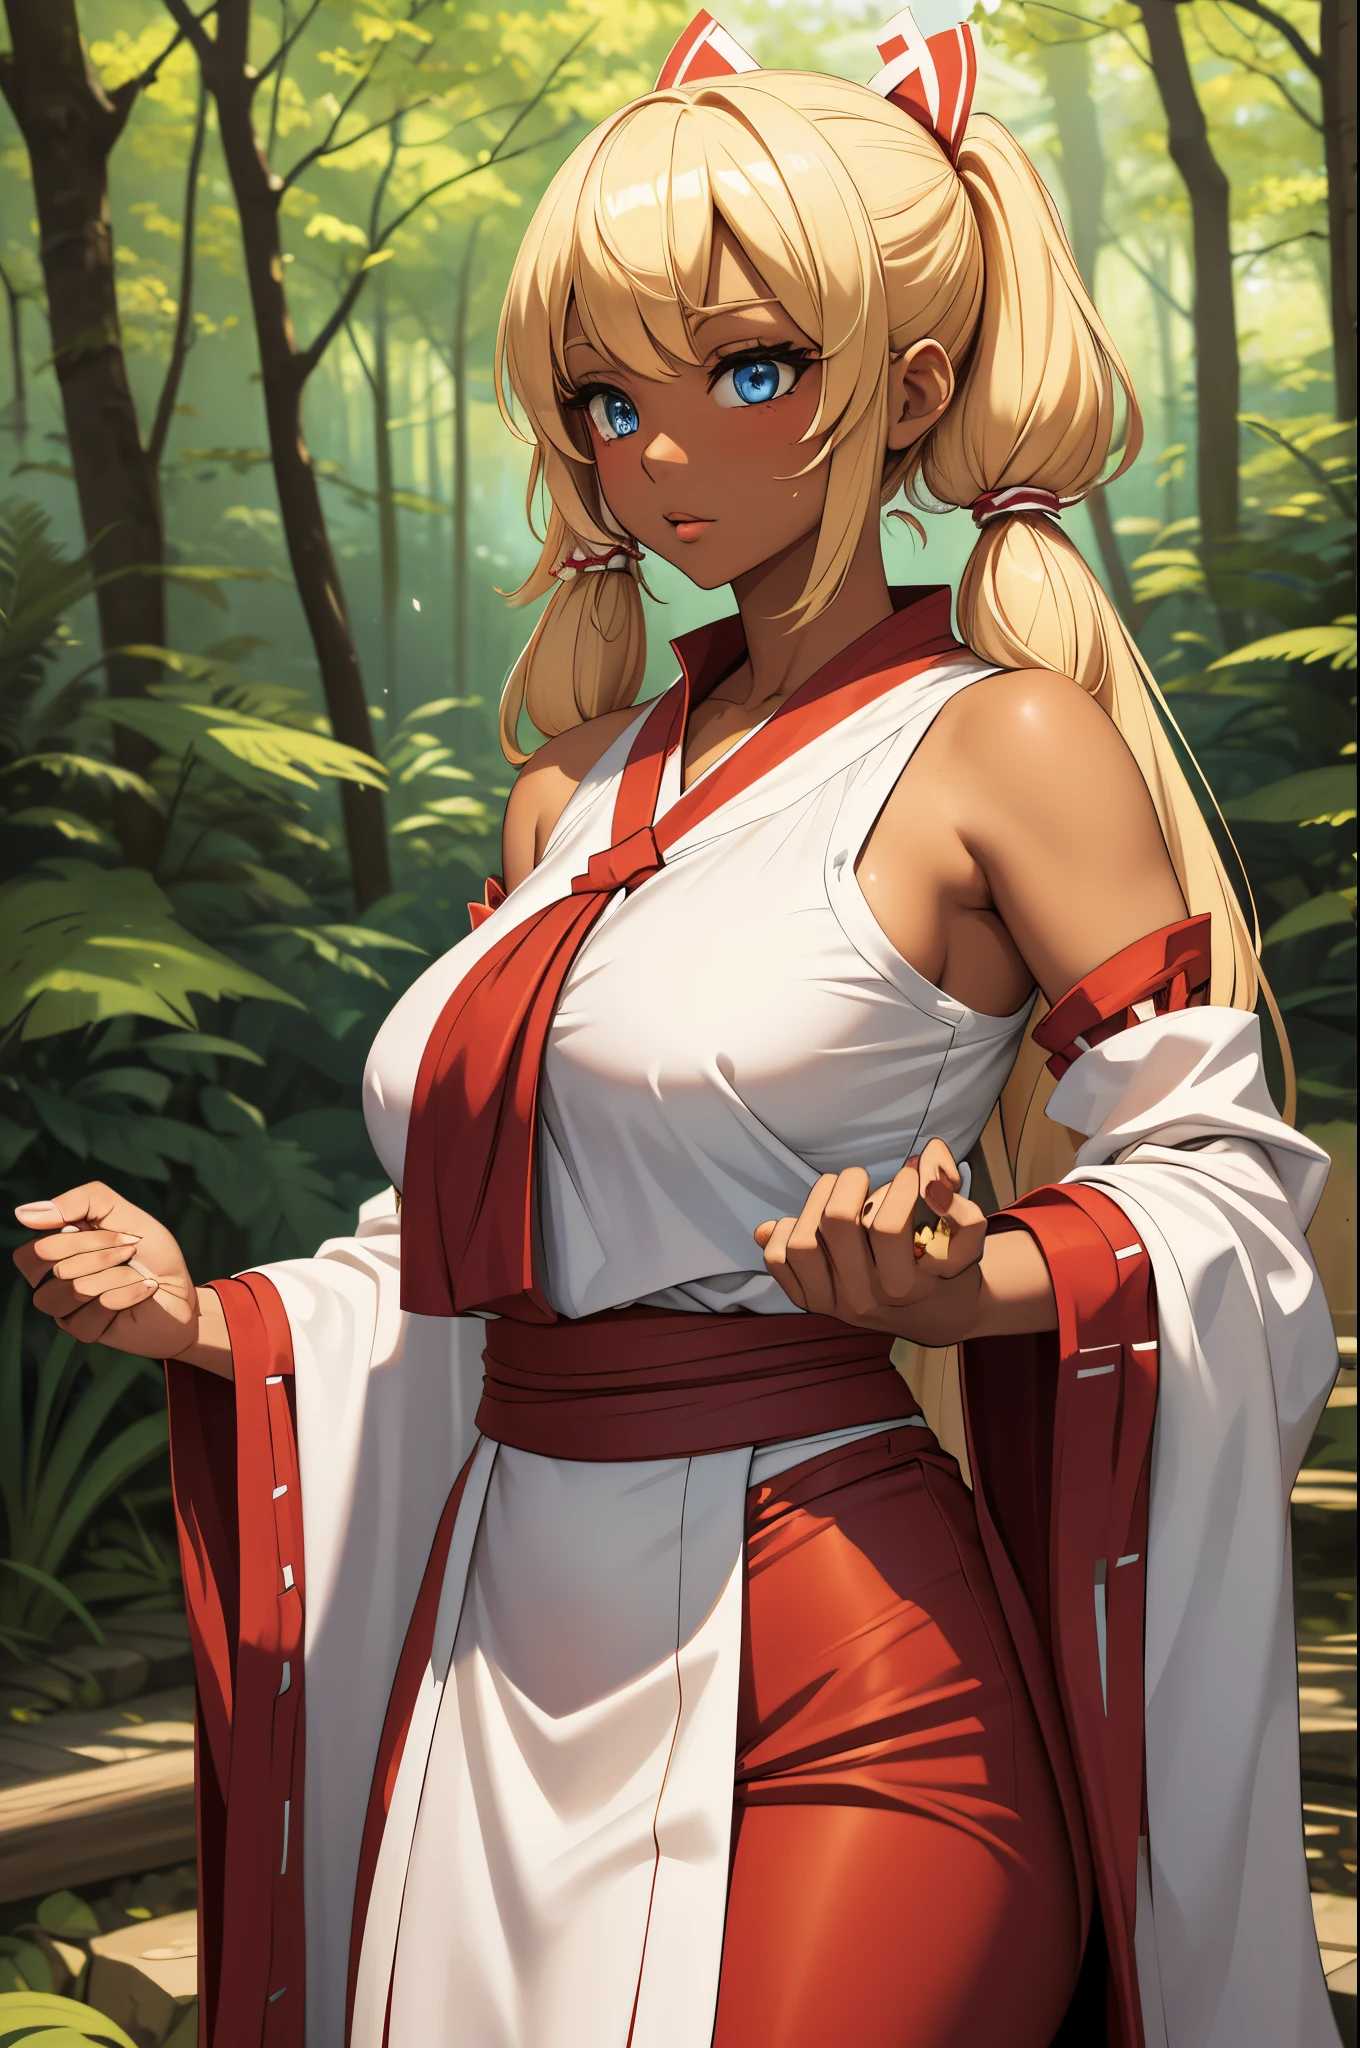 Réparation féminine, cheveux blonds twintails, yeux bleus, peau marron foncé, Gros seins, porter une tenue de miko comme Reimu Hakurei dans une forêt